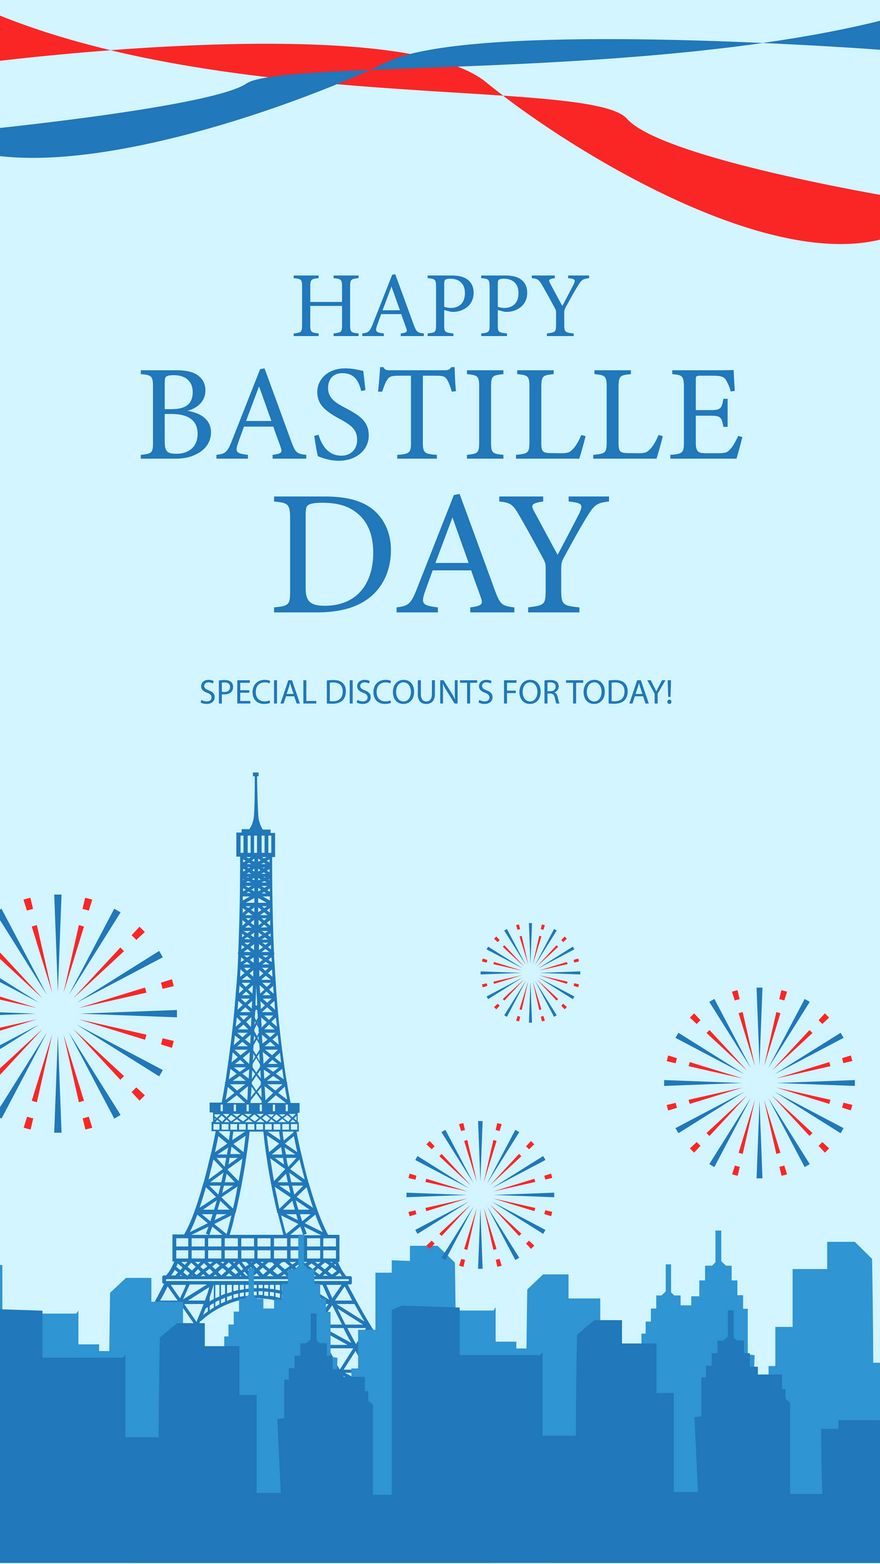 Free Bastille Day Invitation Background in PDF, Illustrator, PSD, EPS, SVG, JPG, PNG